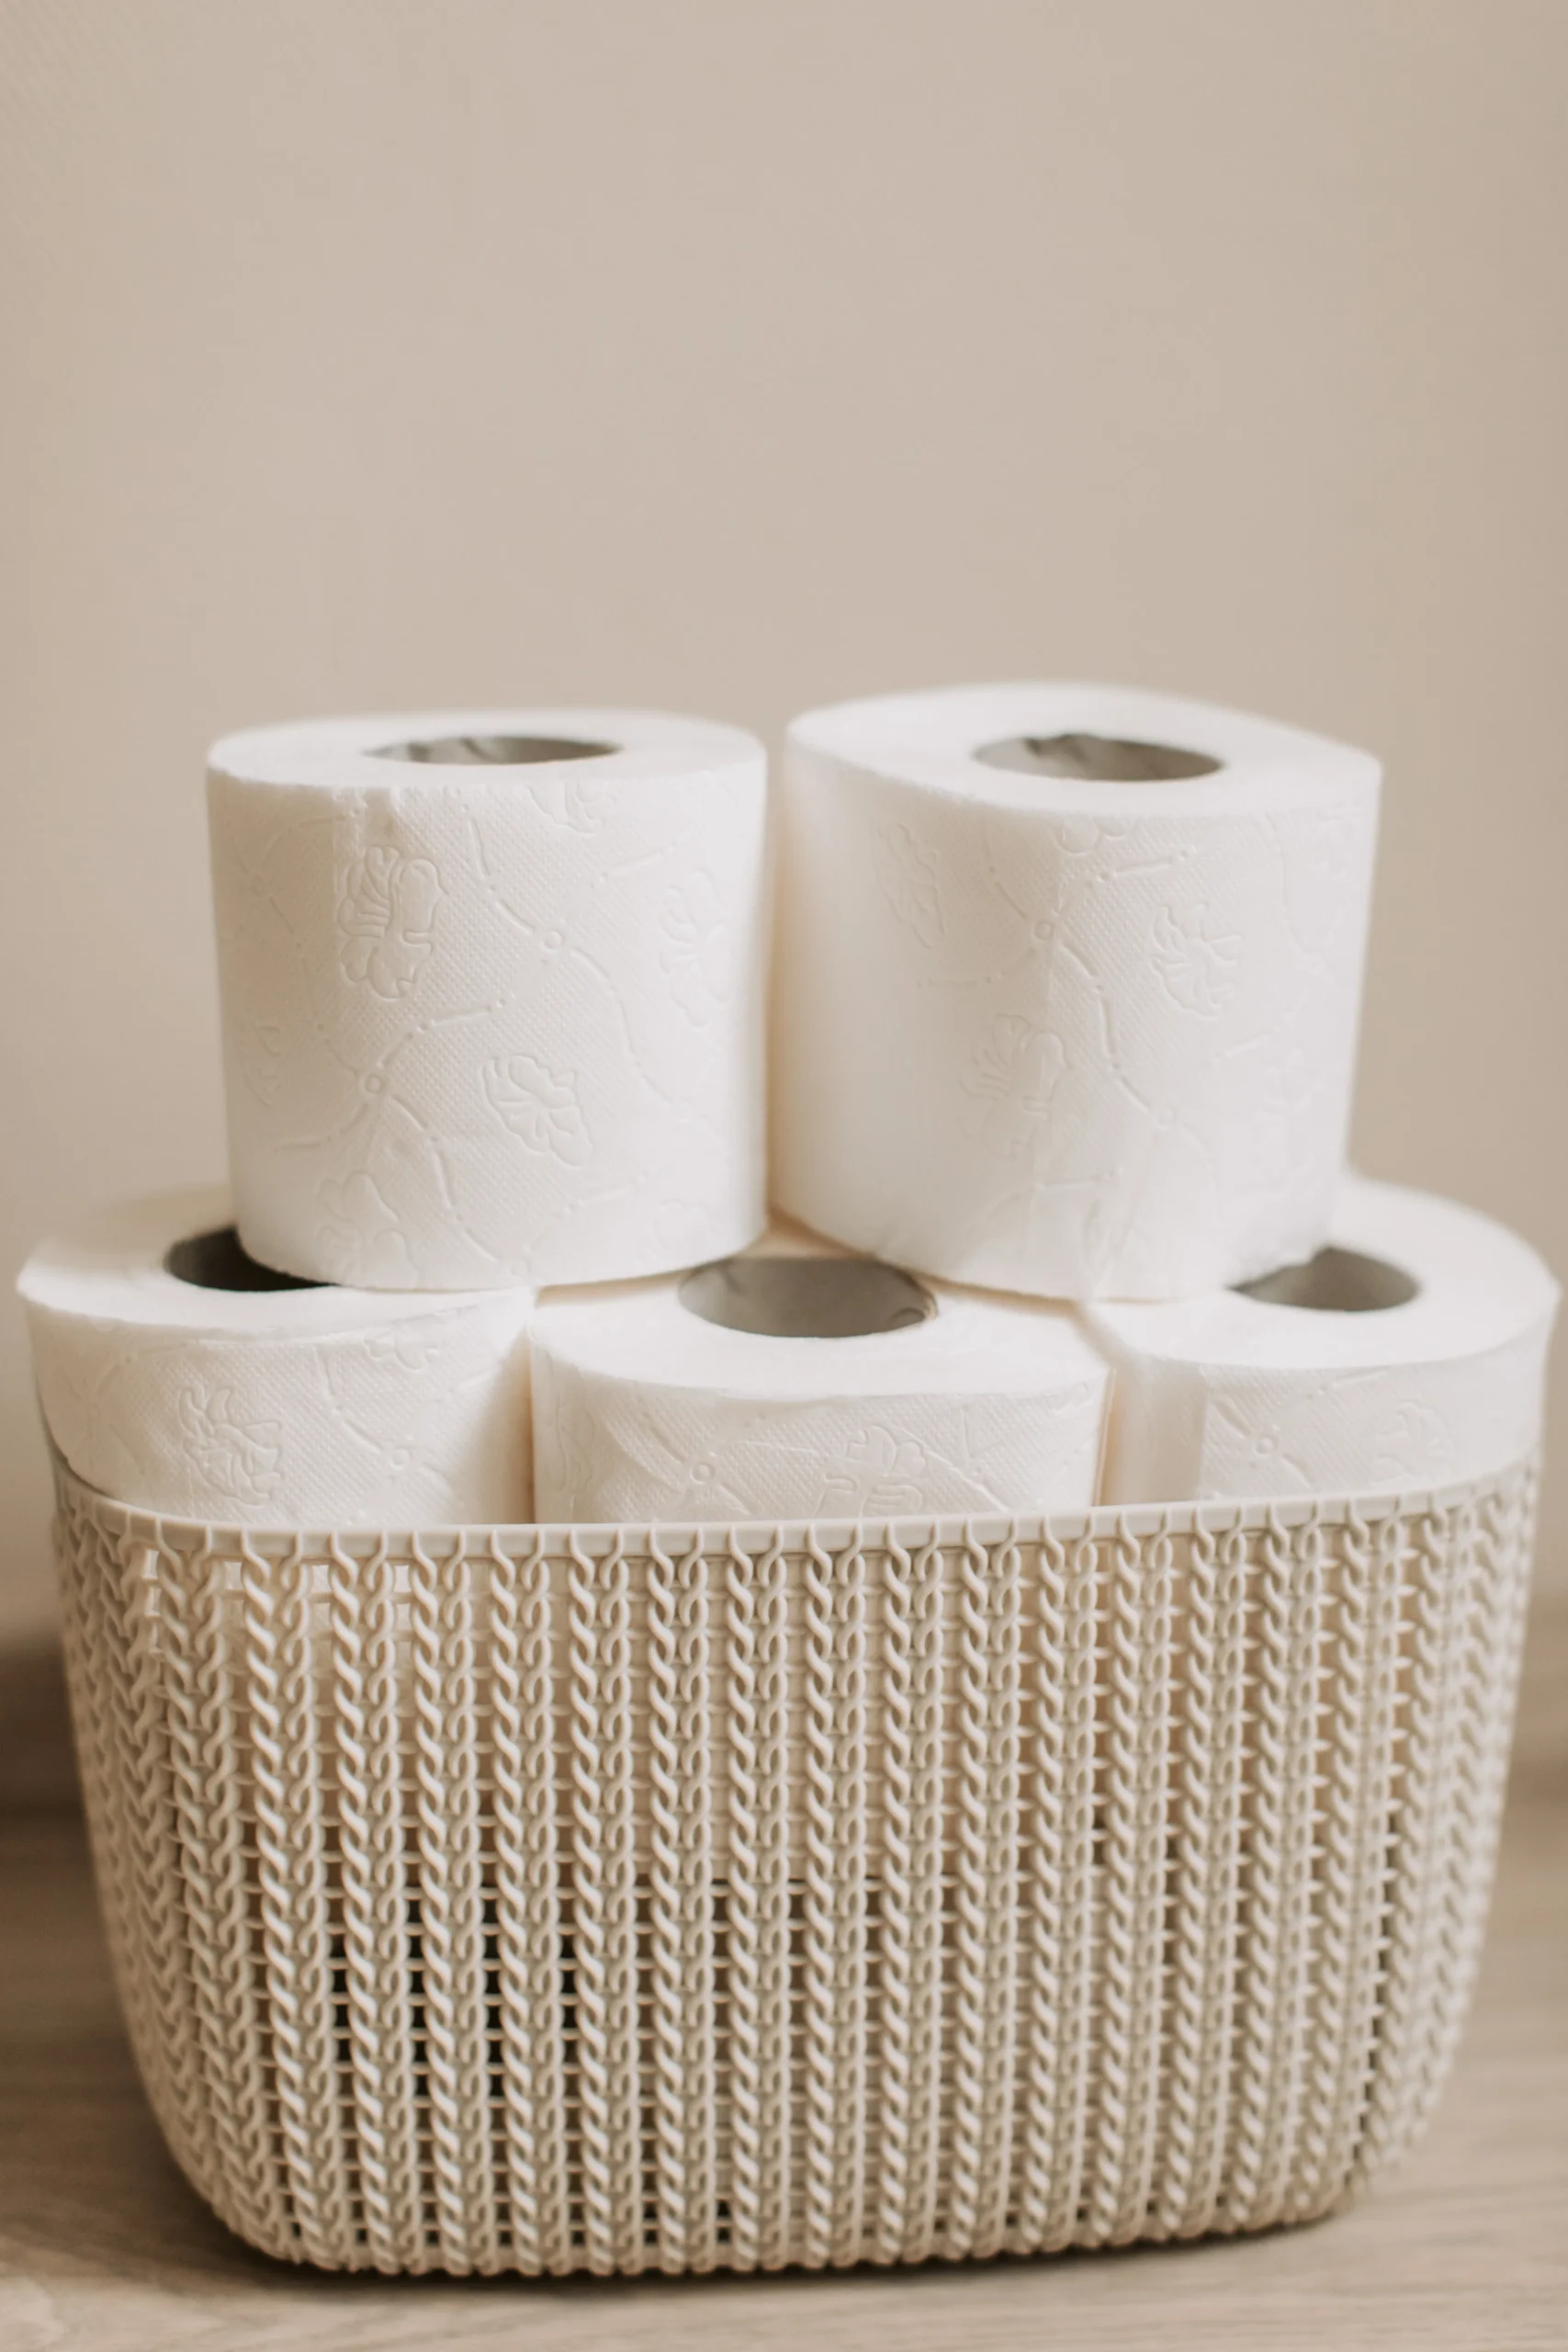 best toilet paper